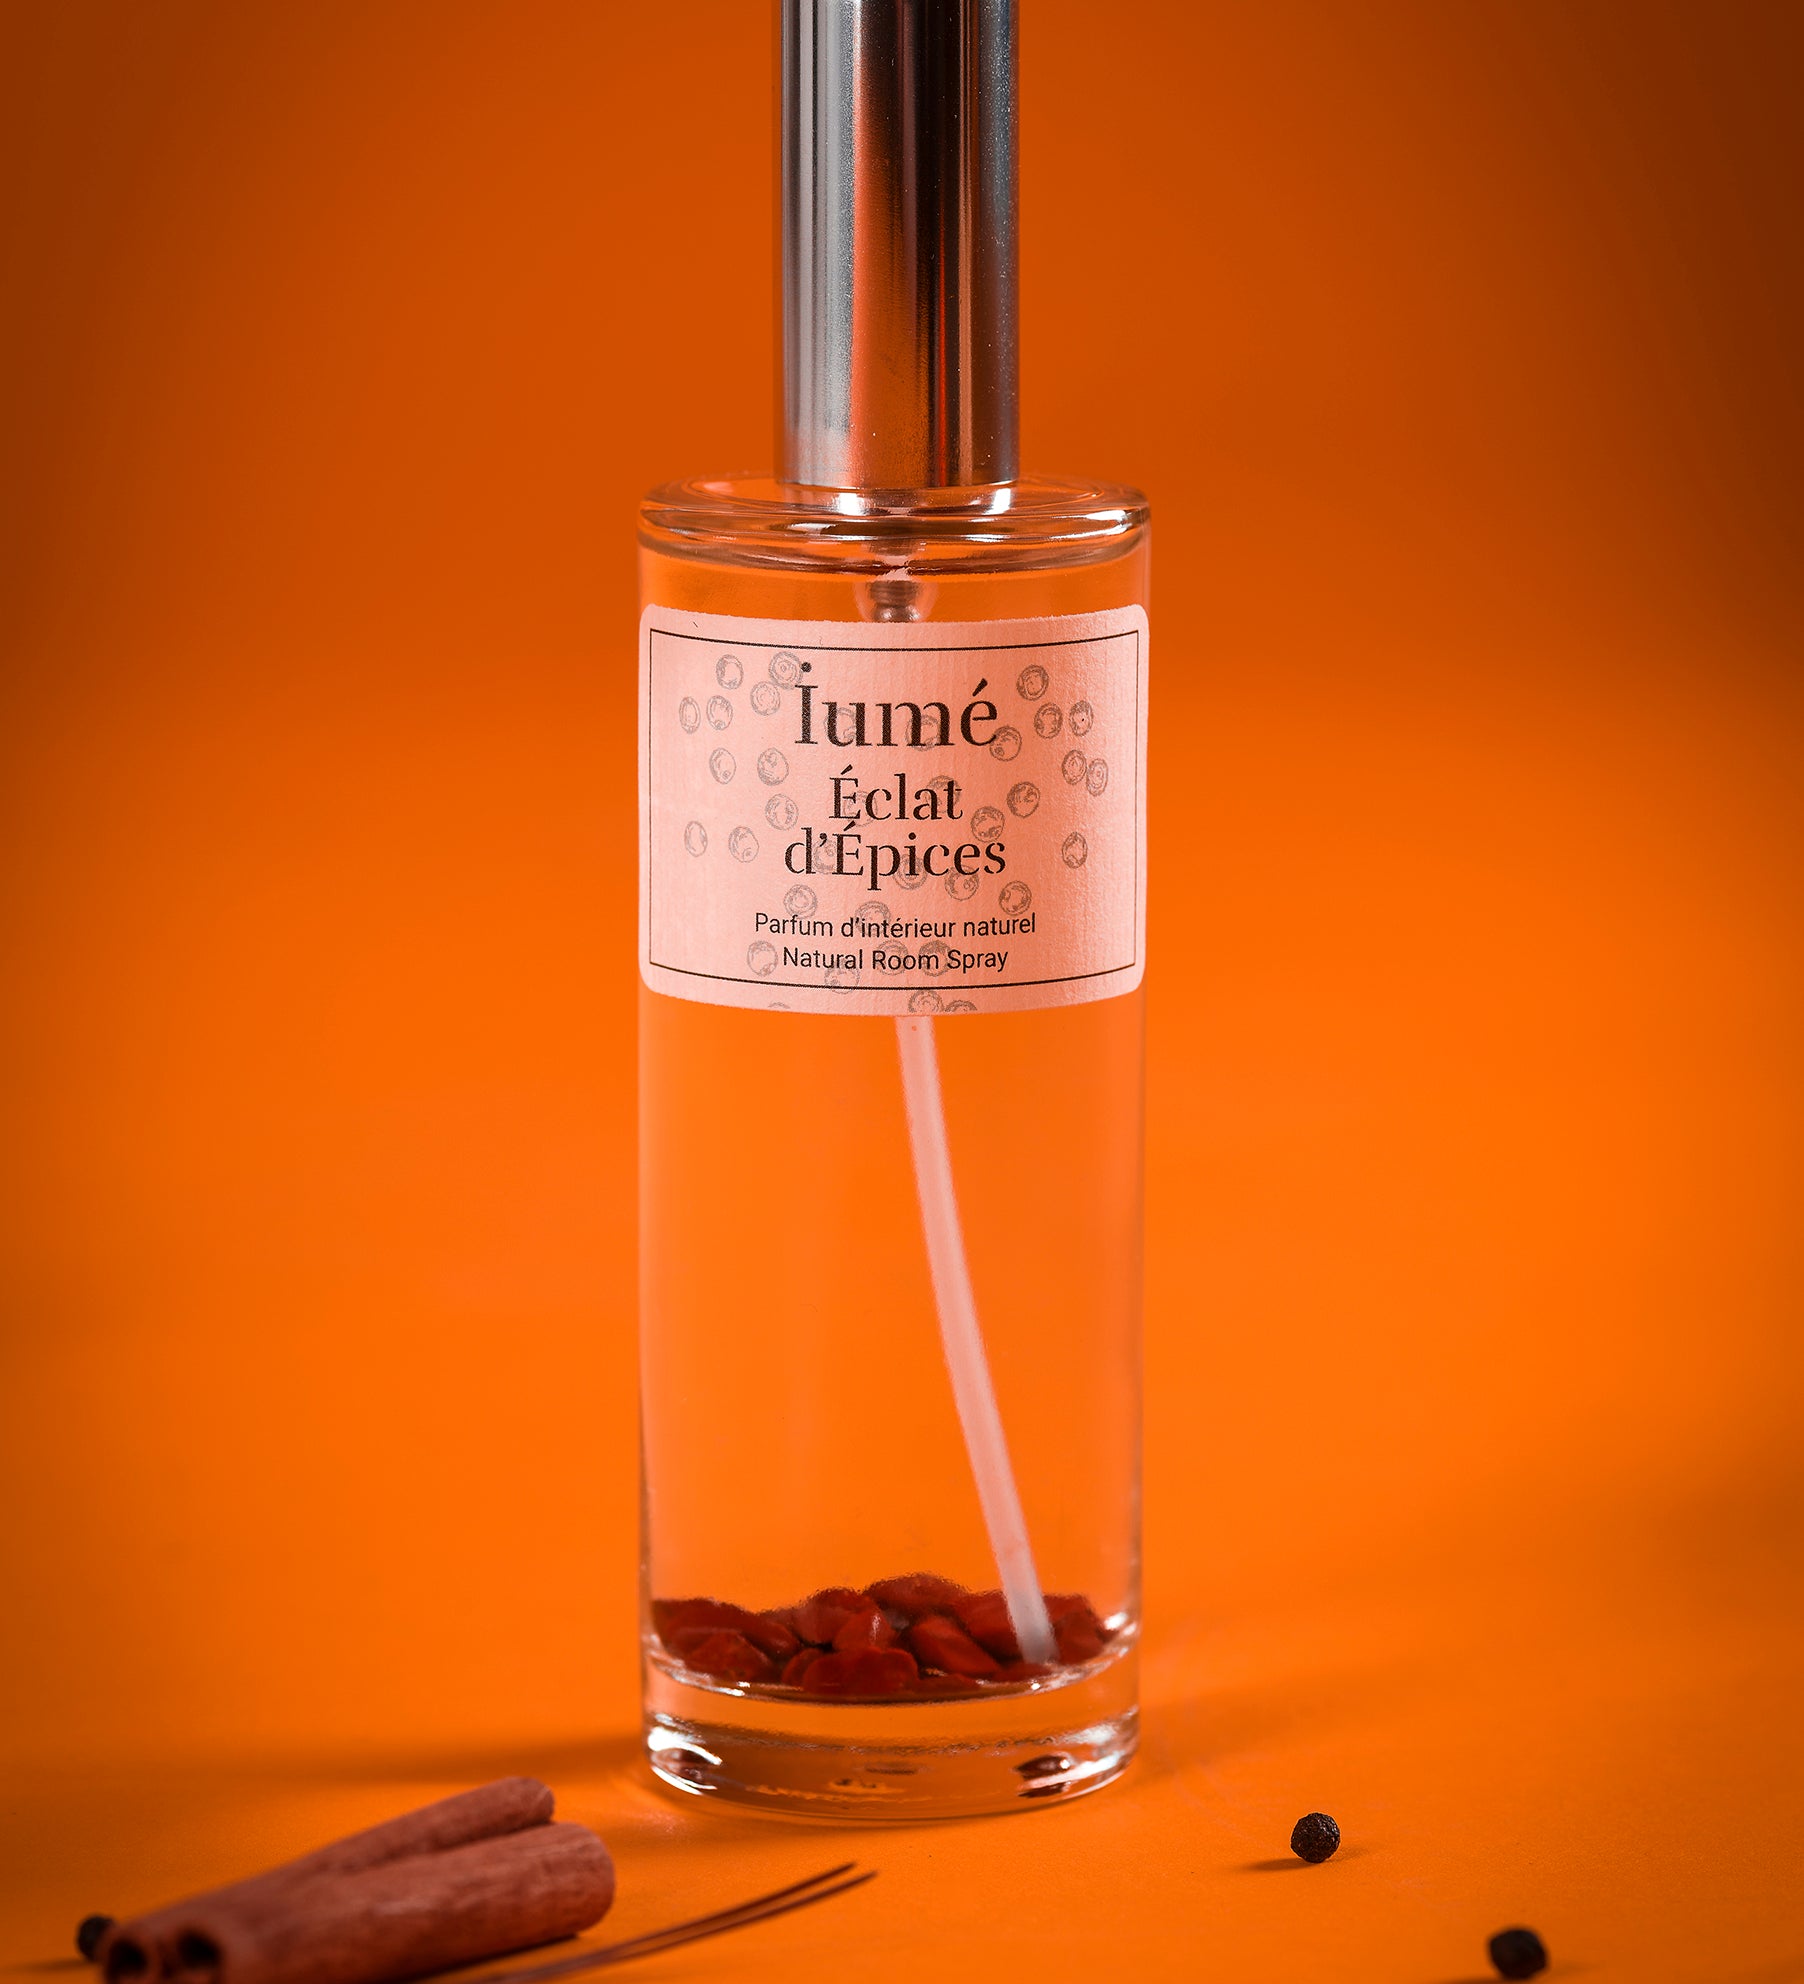 Spray Parfum d'Intérieur - Éclat d'Épices - IUME 